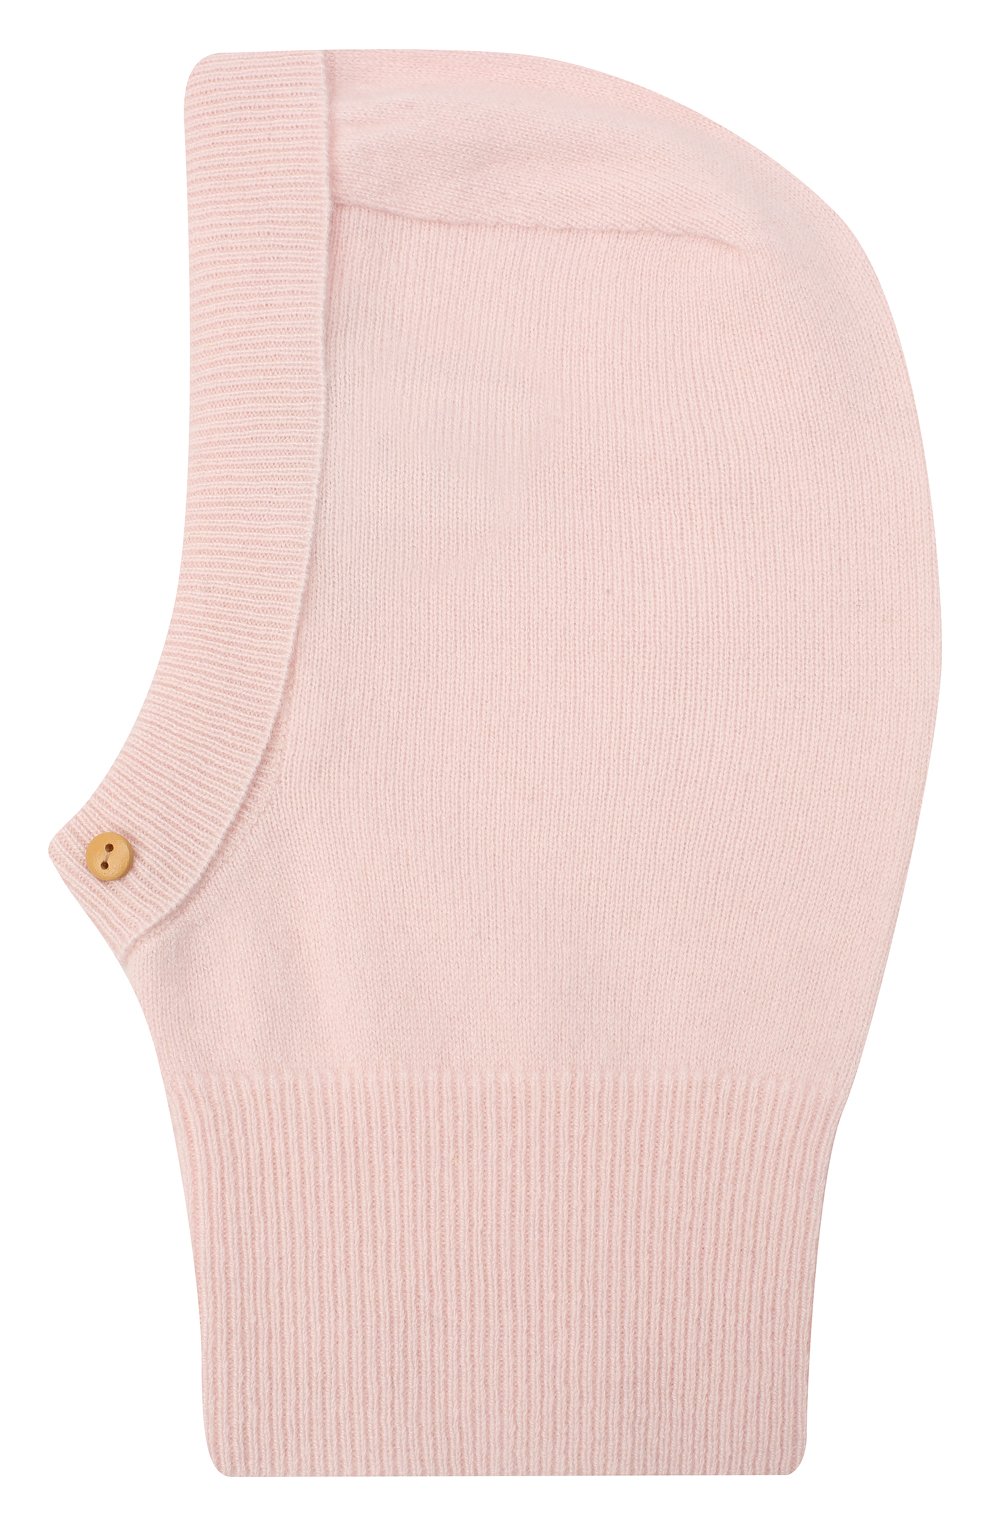 Детского кашемировая шапка-балаклава LES LUTINS PARIS светло-розового цвета, арт. 20H029/CALIXTE | Фото 2 (Материал: Текстиль, Кашемир, Шерсть)